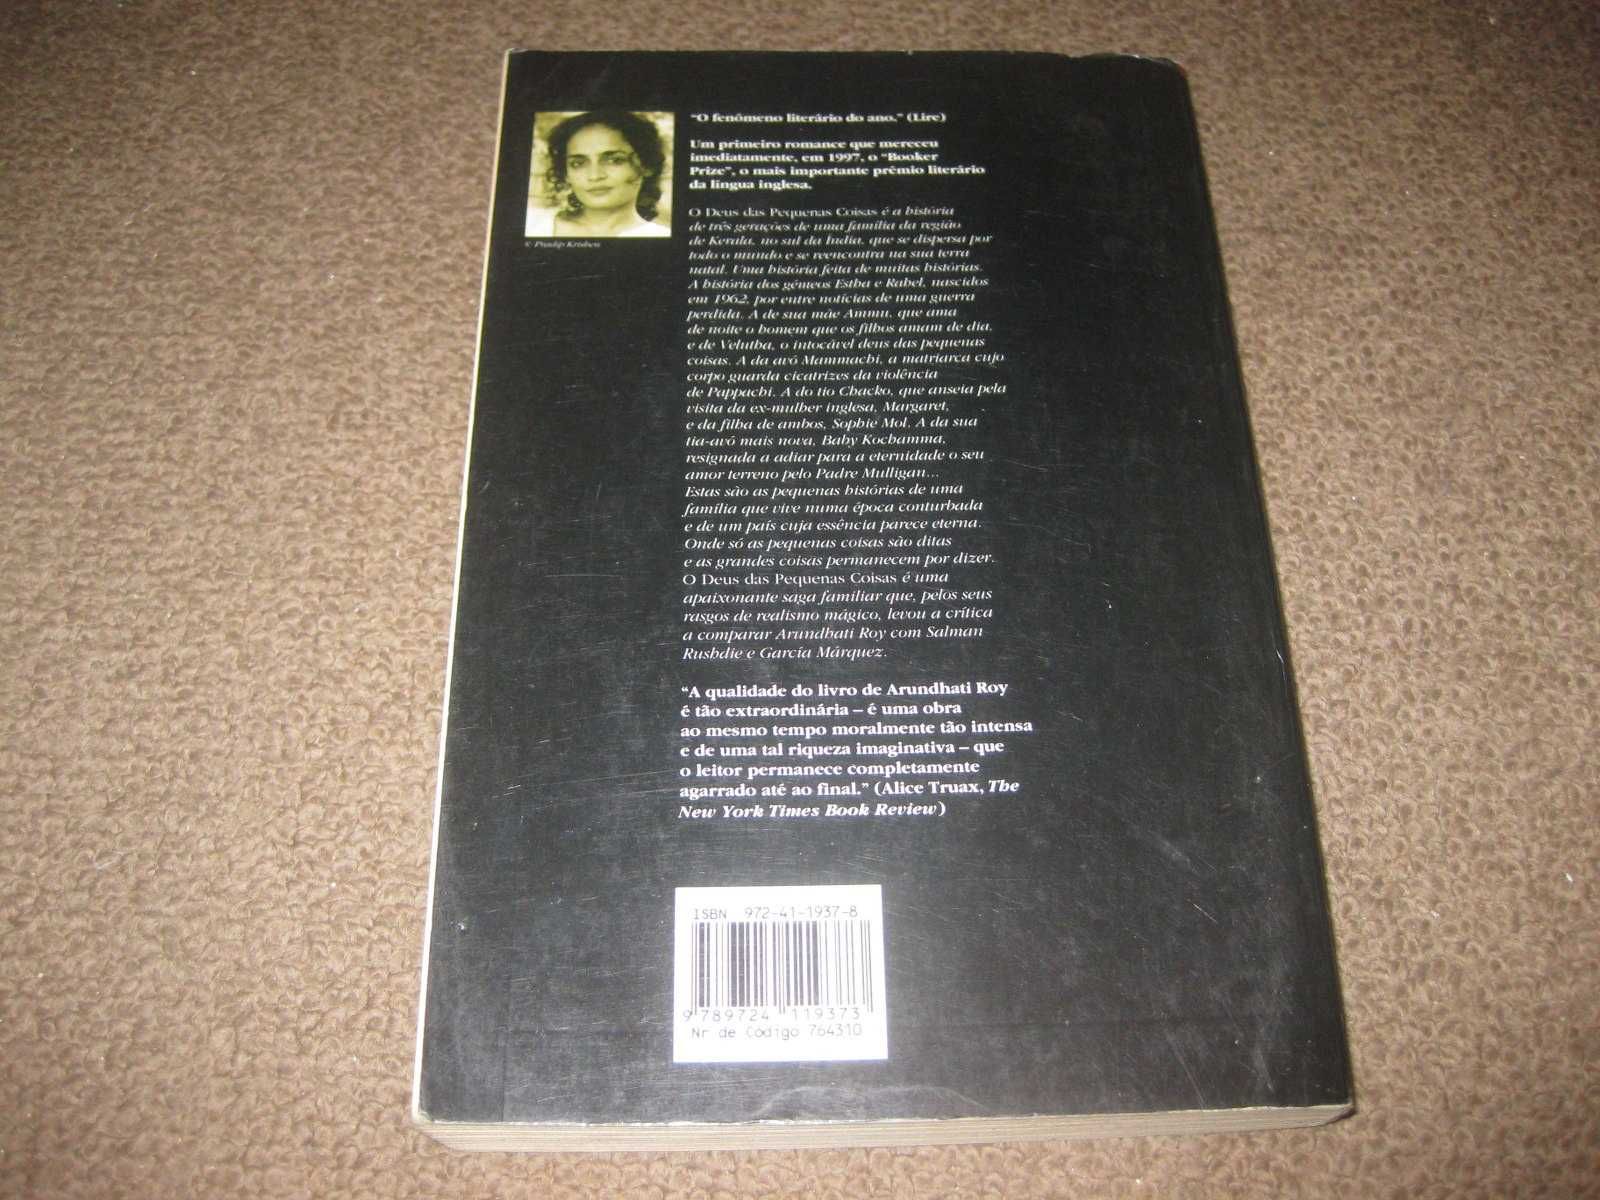 Livro "O Deus das Pequenas Coisas" de Arundhati Roy